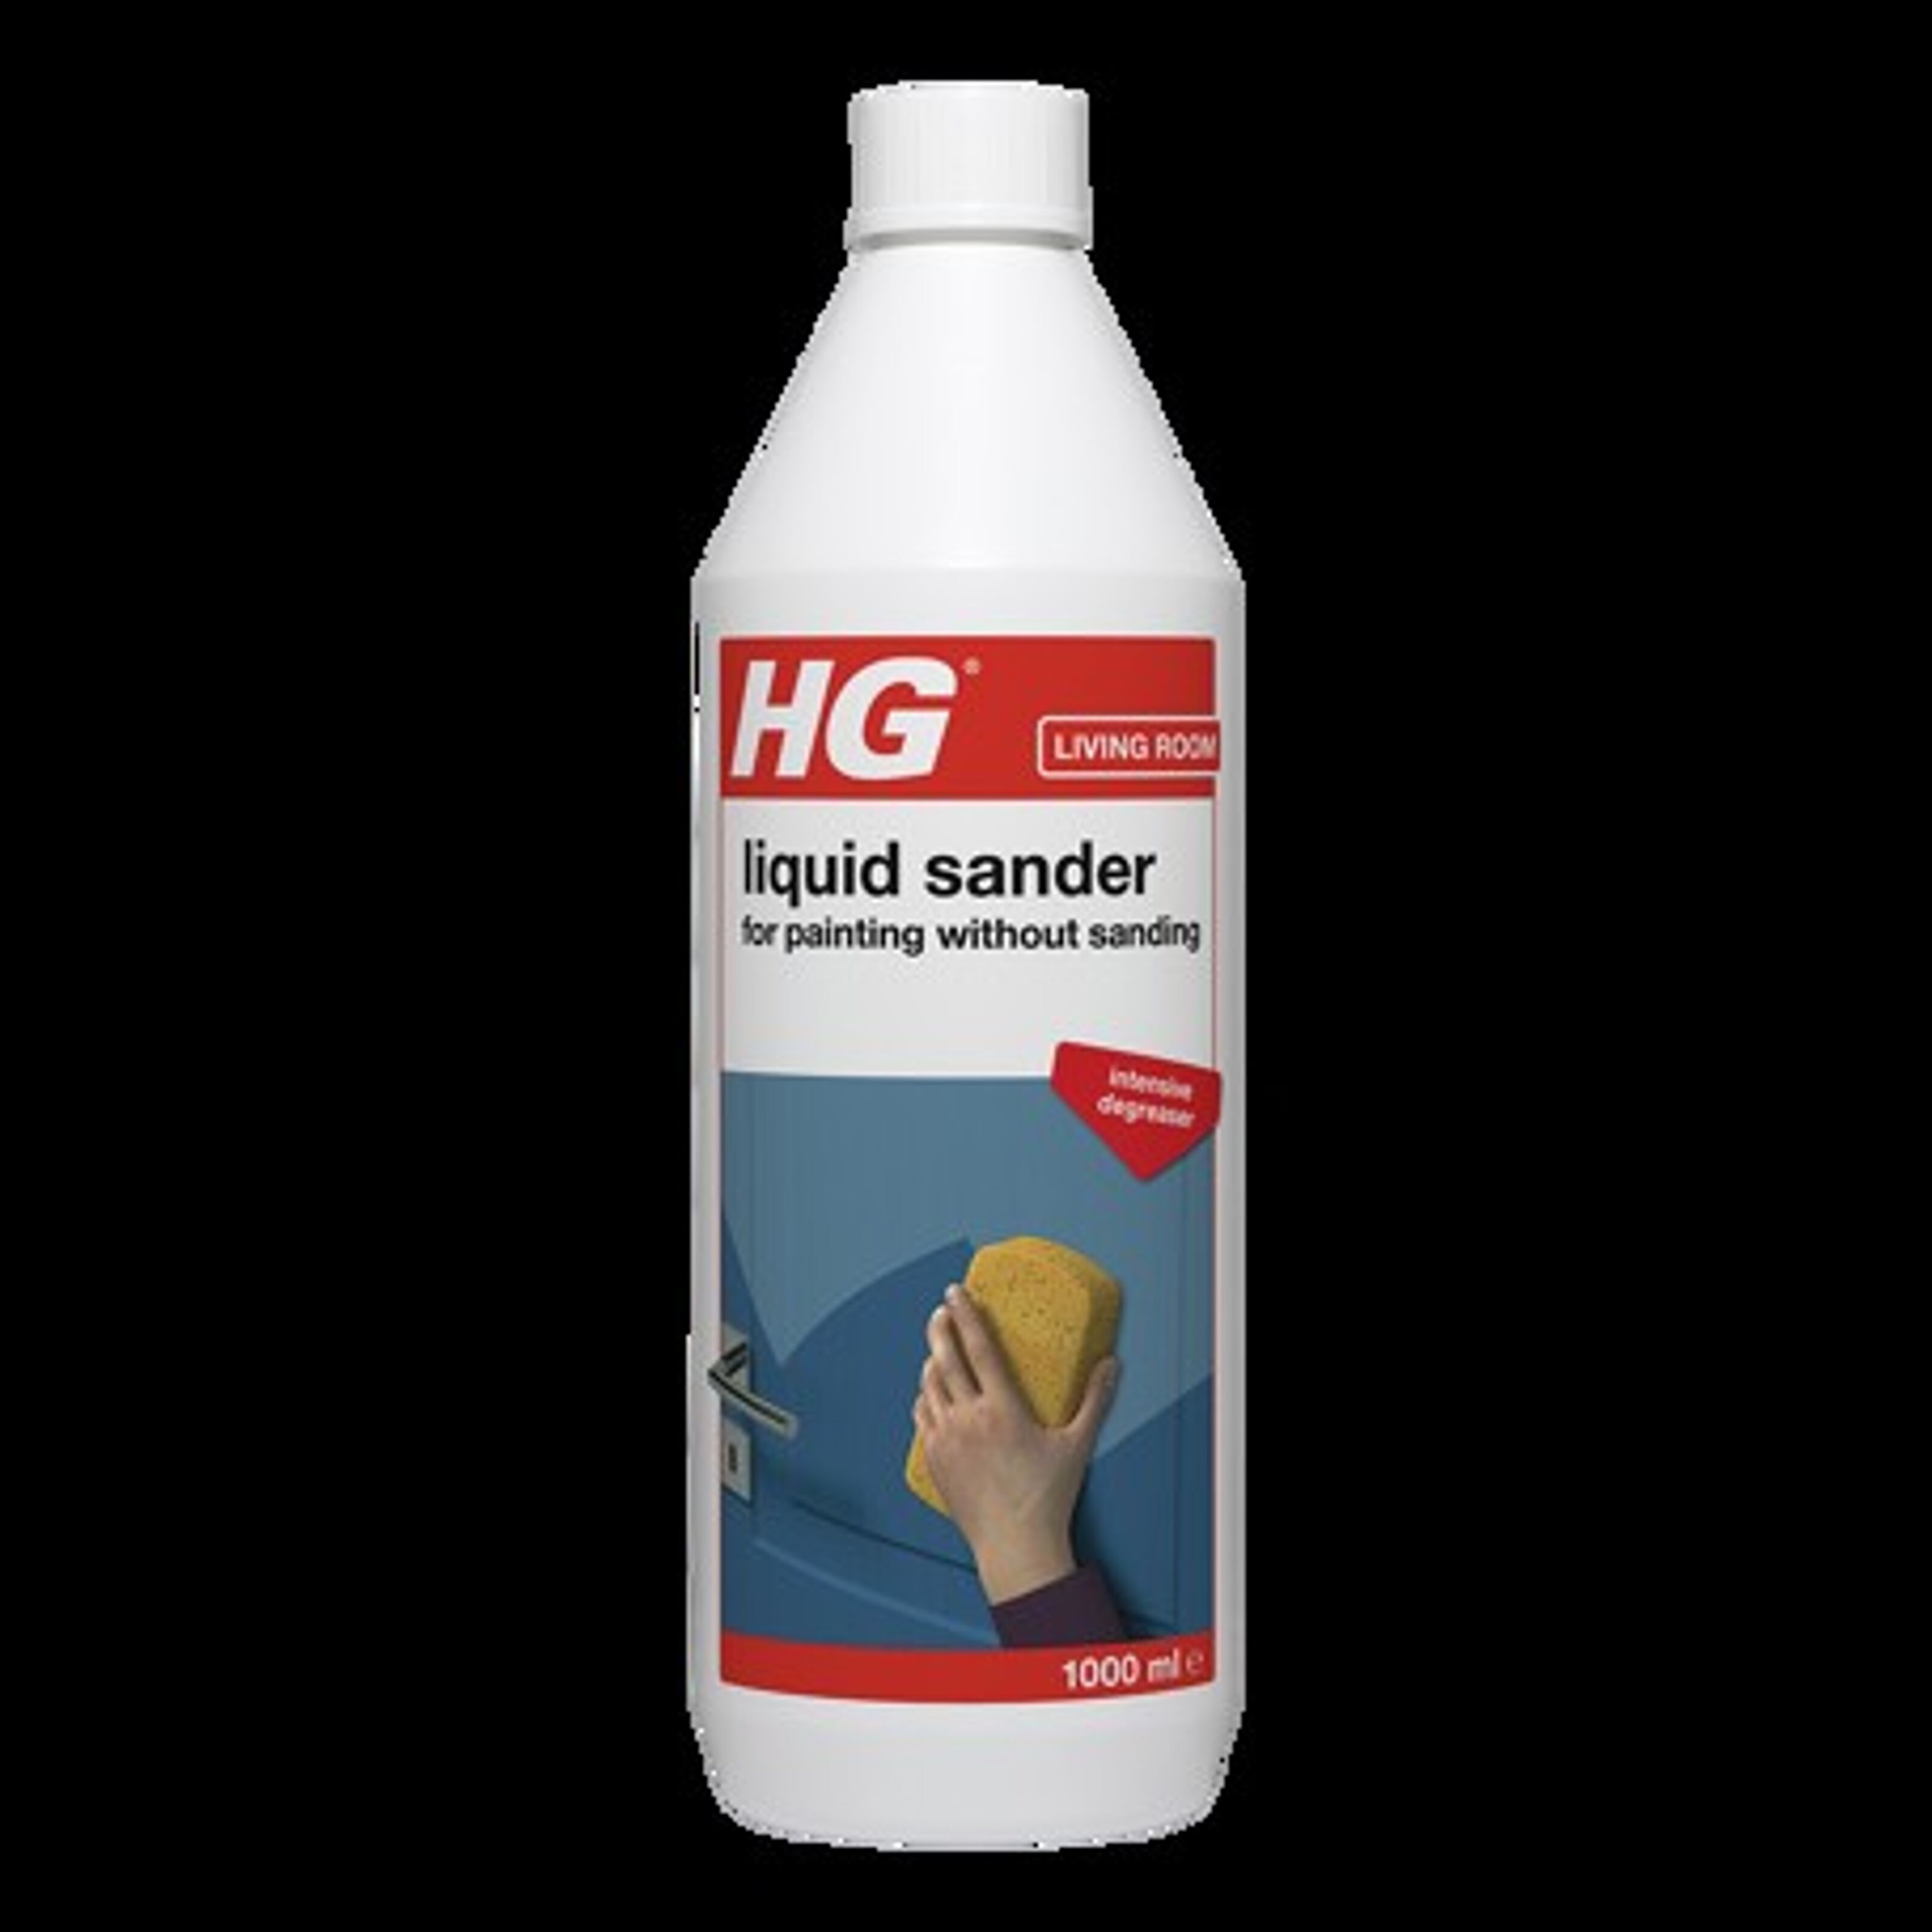 HG Spray Antical en Espuma 0,5 l